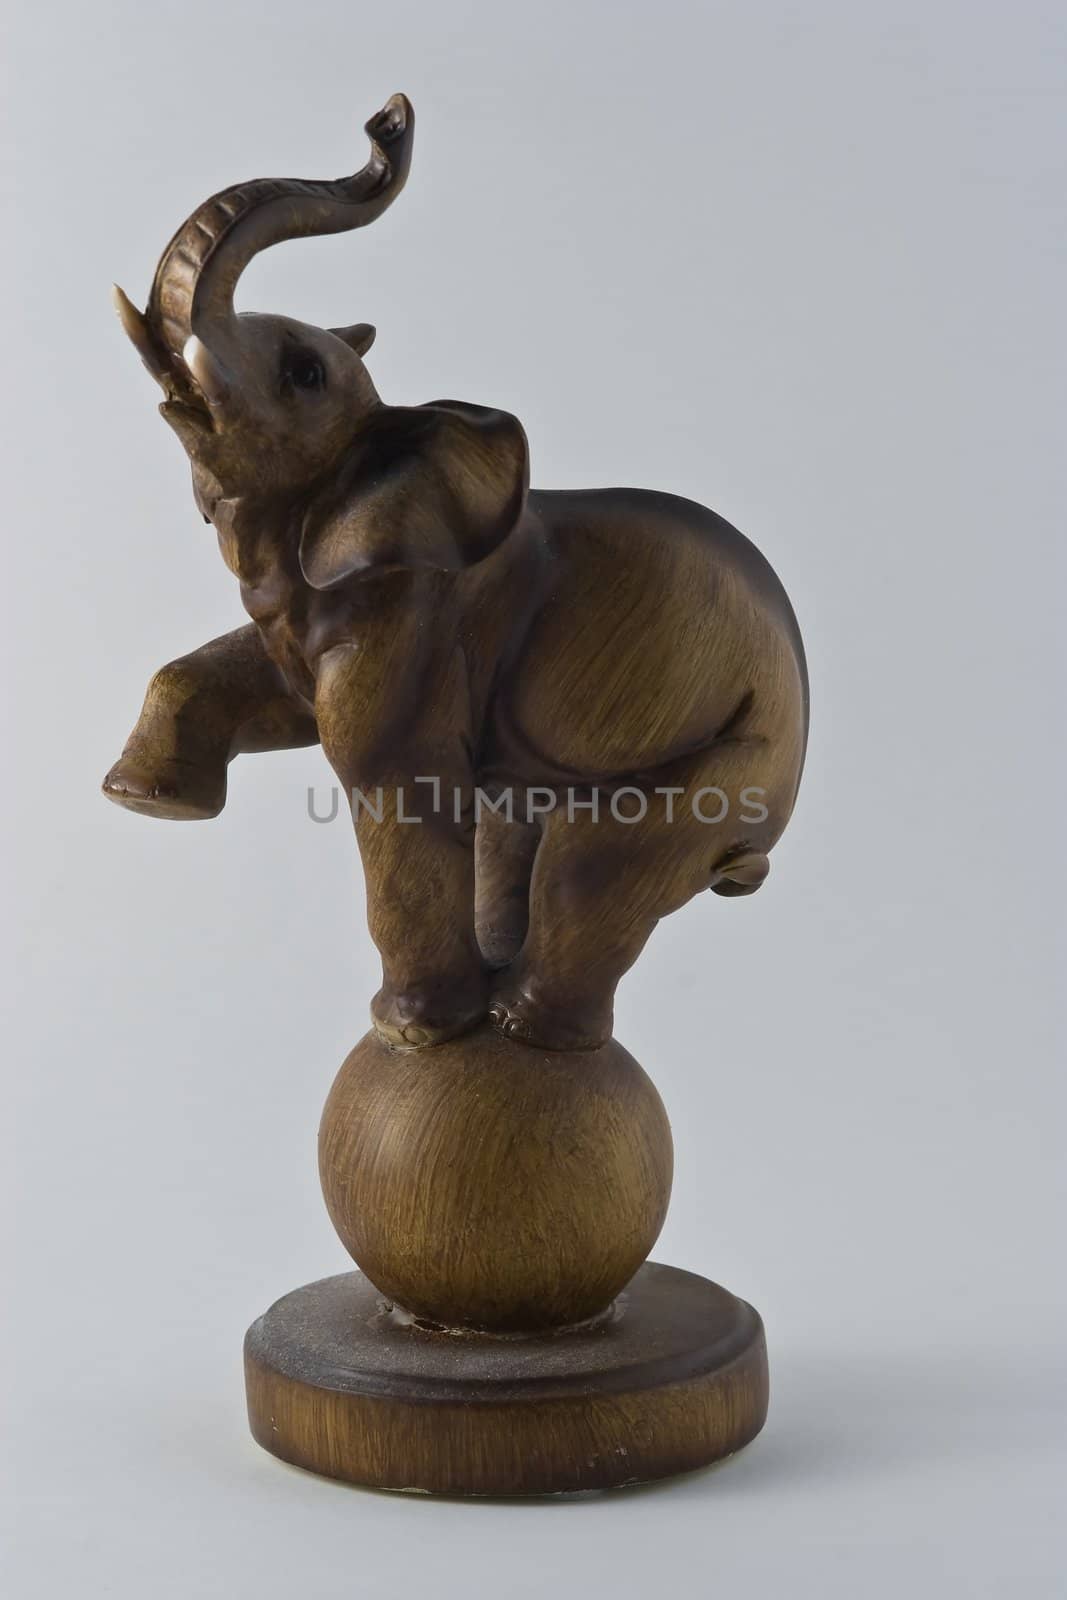 Wooden elephant statuette